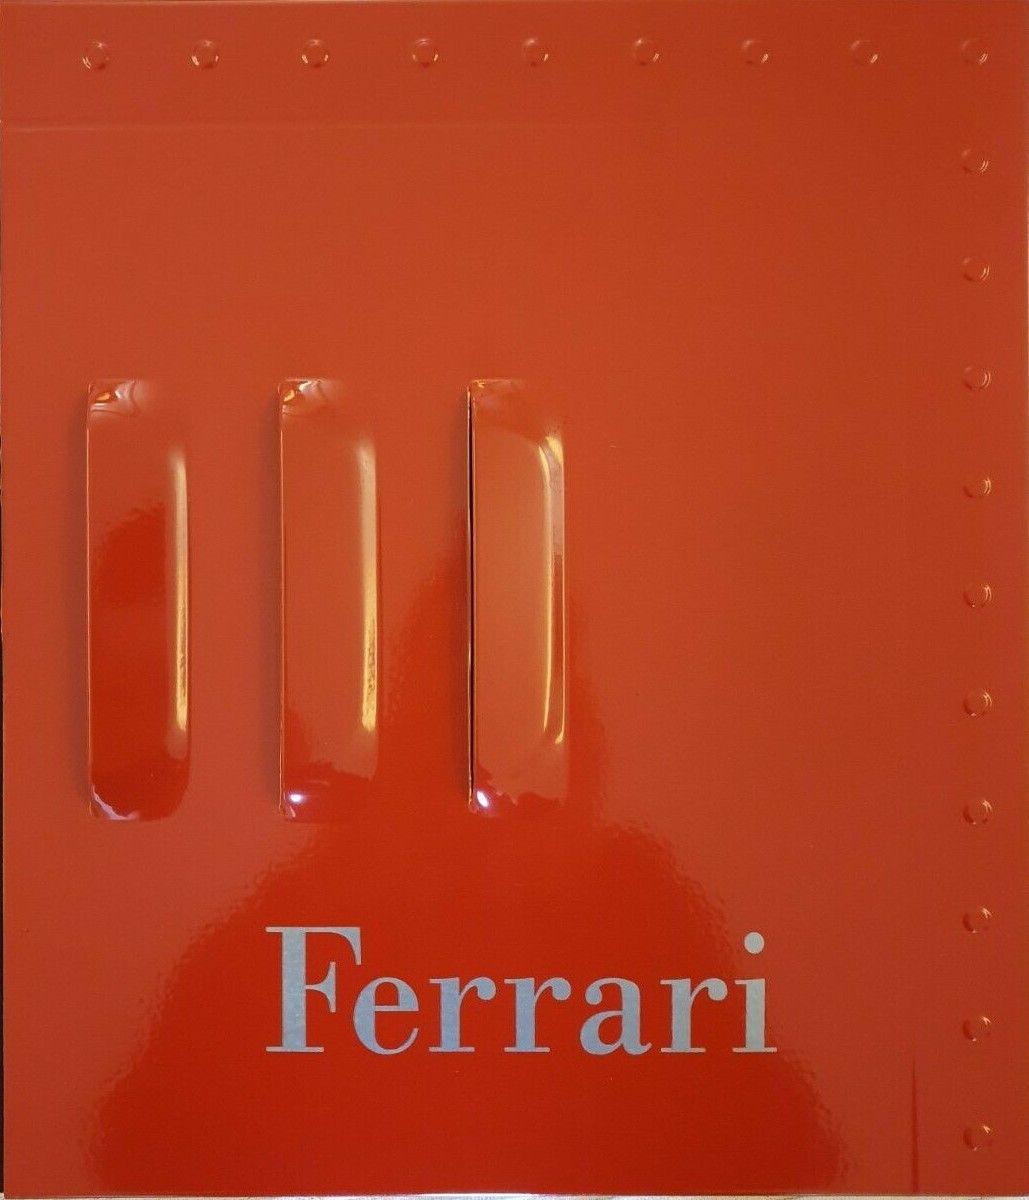 Non è la fiancata di una Ferrari, è un libro! Con copertina di metallo e costa 150 €